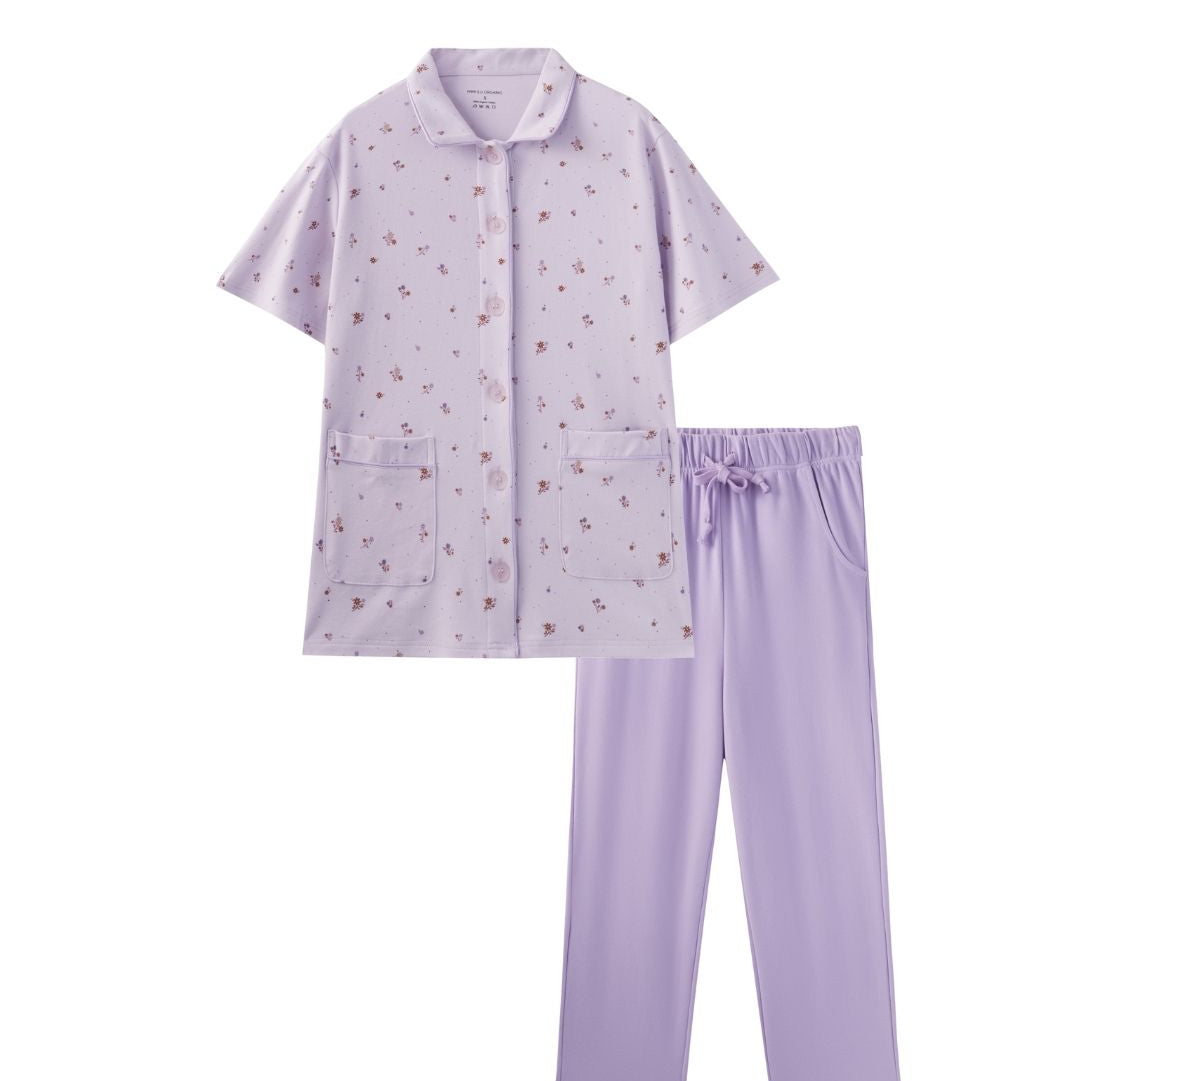 Women Super Soft Organic Cotton PJ Set-Violet